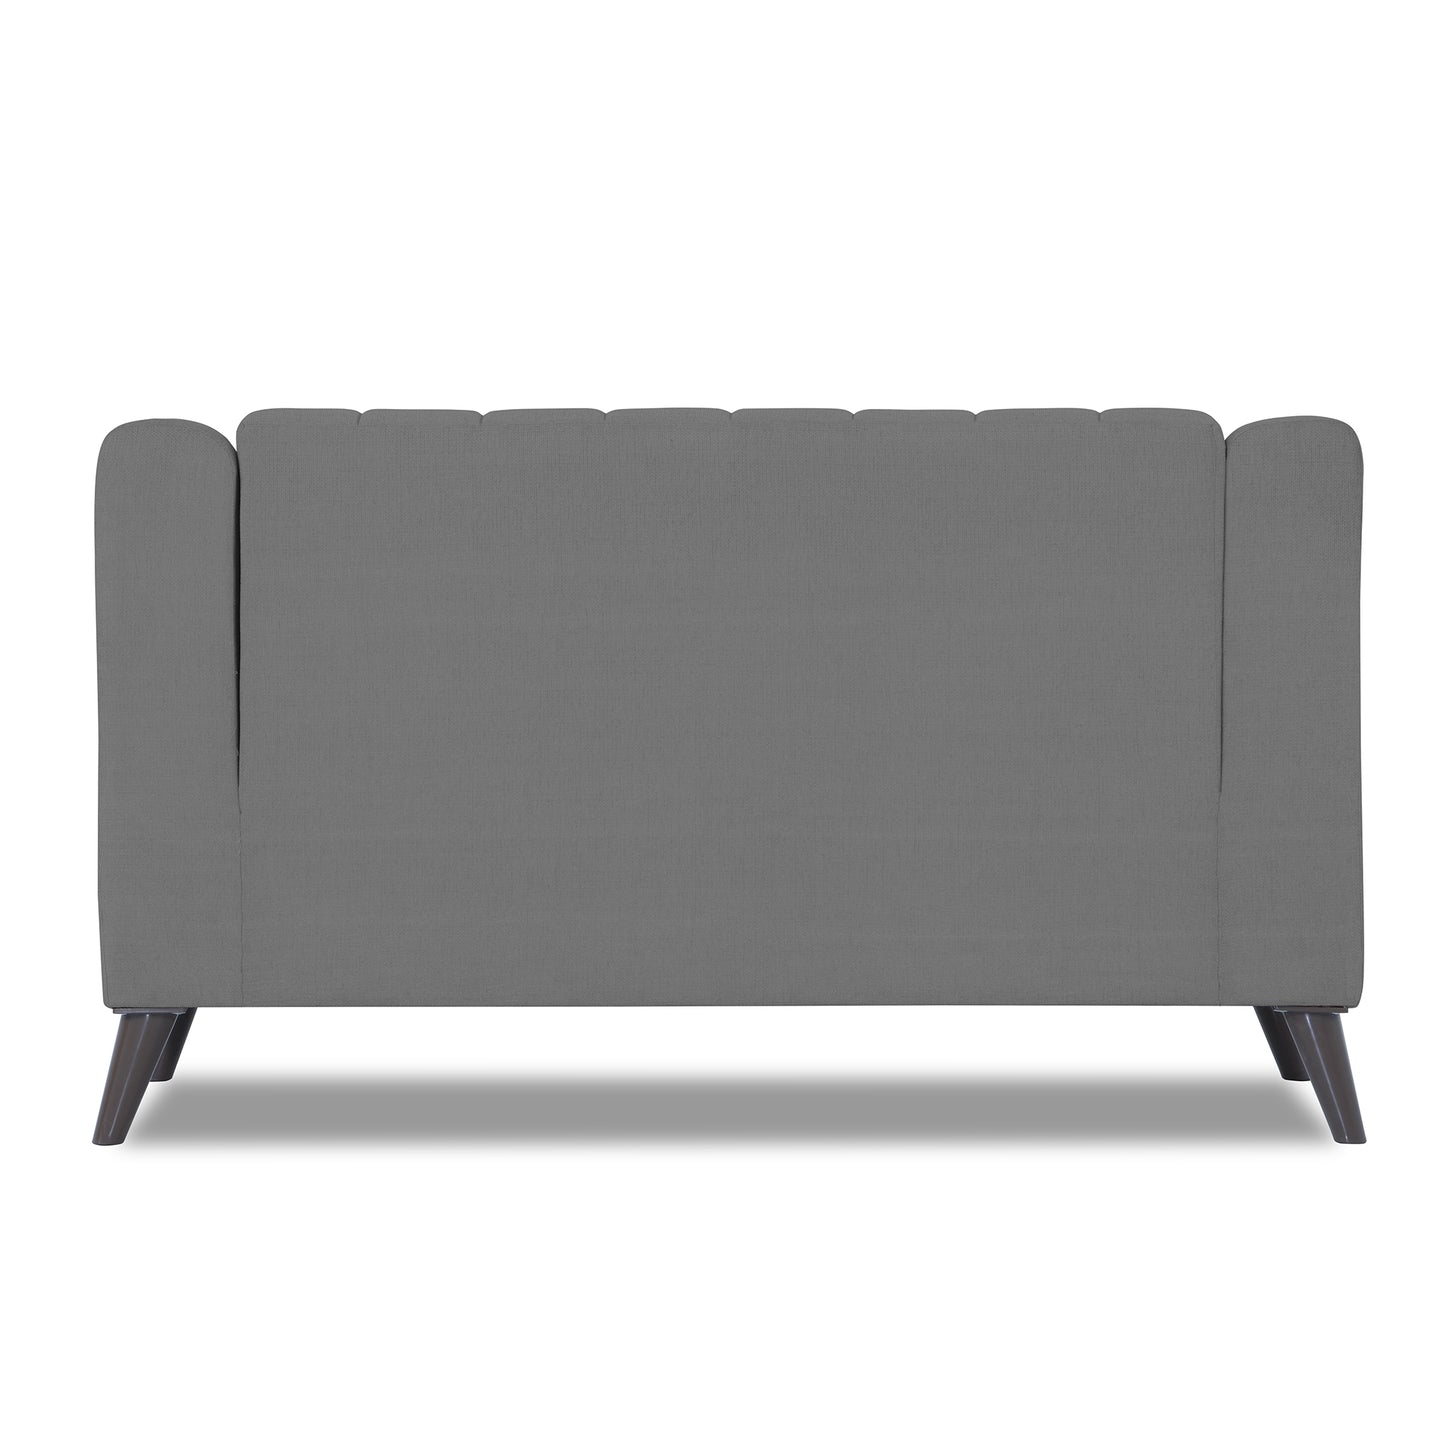 Adorn India Premium Laurel 2 Seater Sofa (Grey)